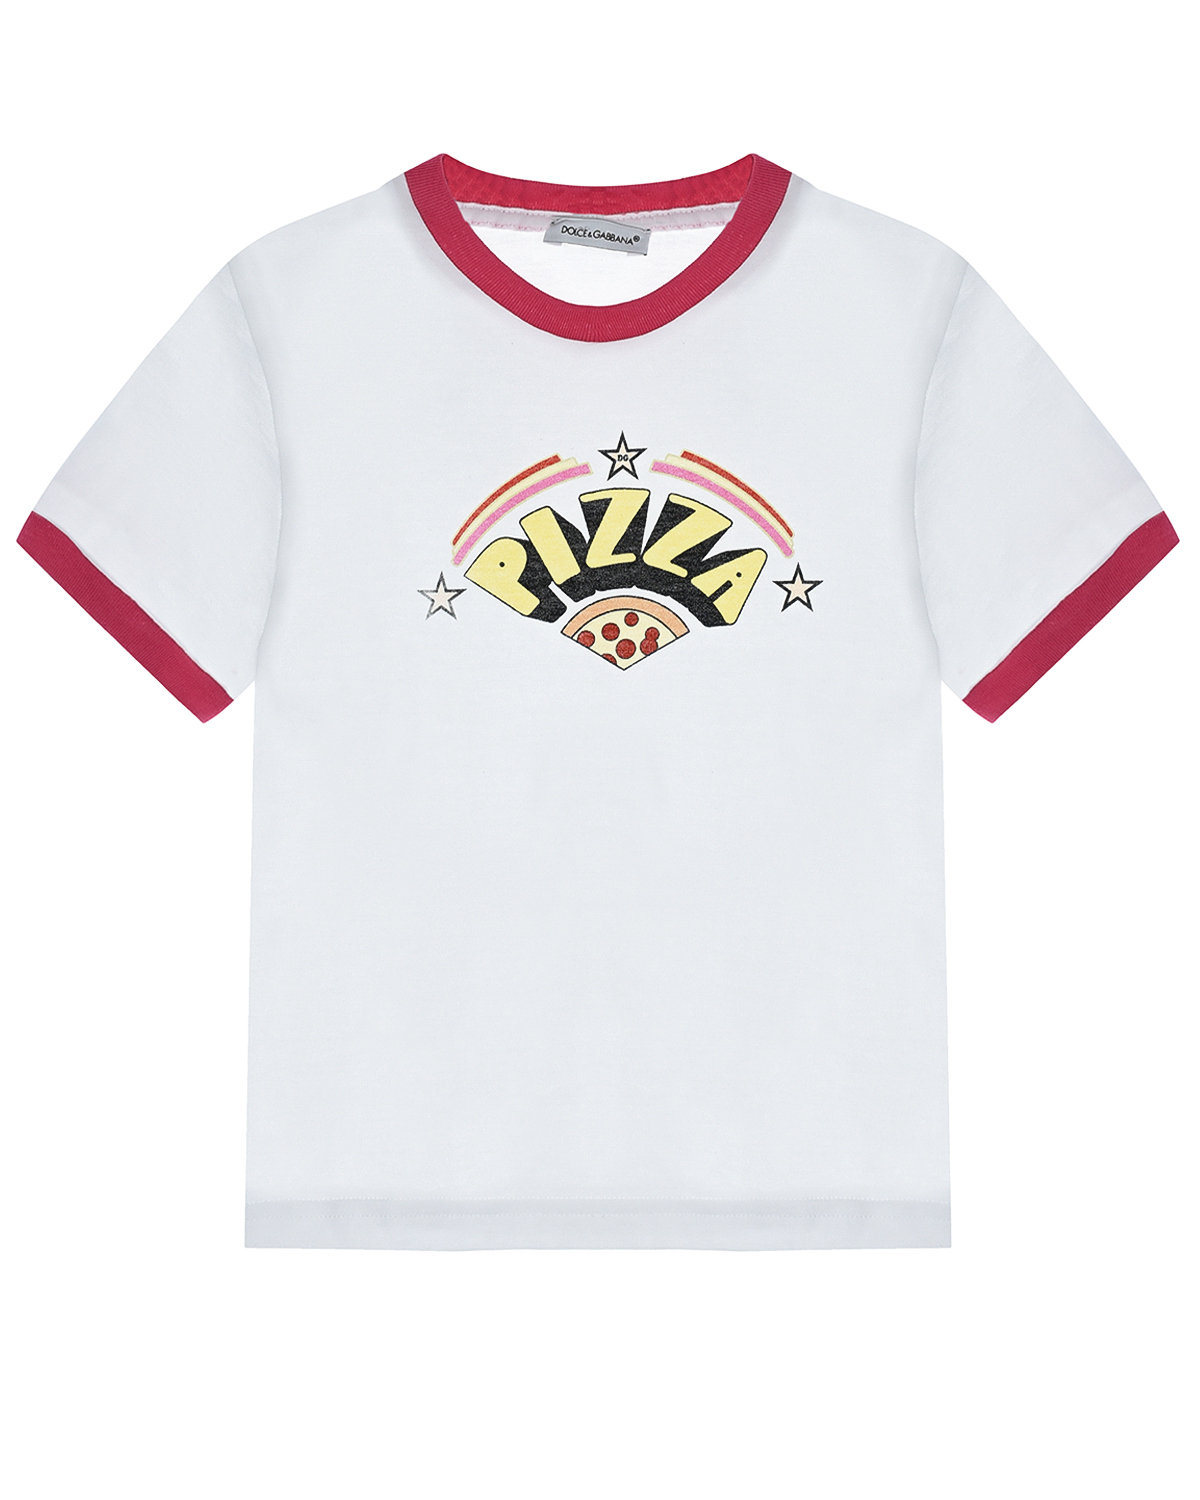 Купить Белая футболка с принтом пицца Dolce&Gabbana детская, Белый, 100%хлопок